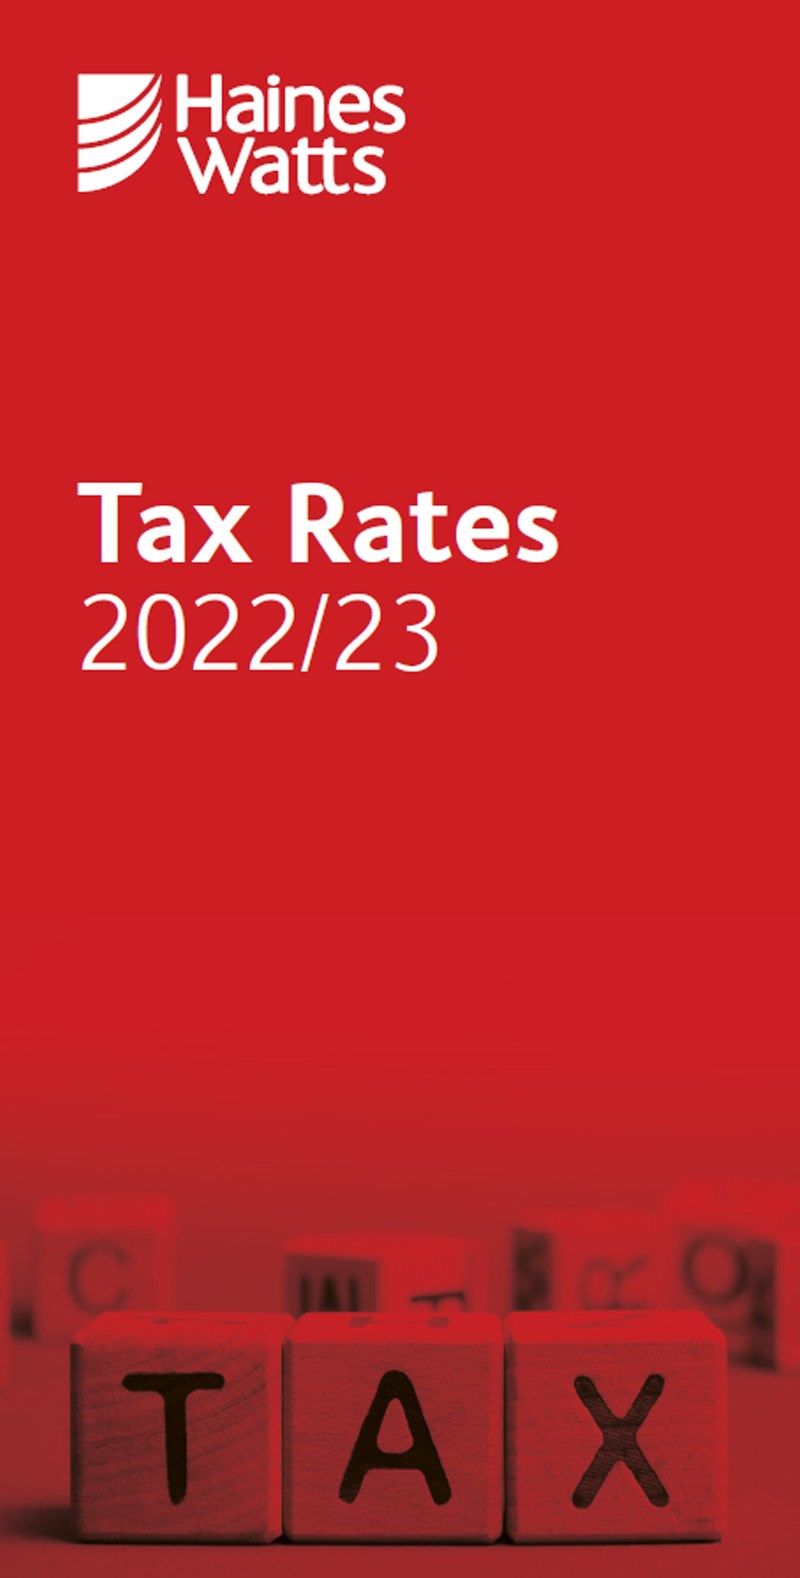 Tax Rates 2022/23